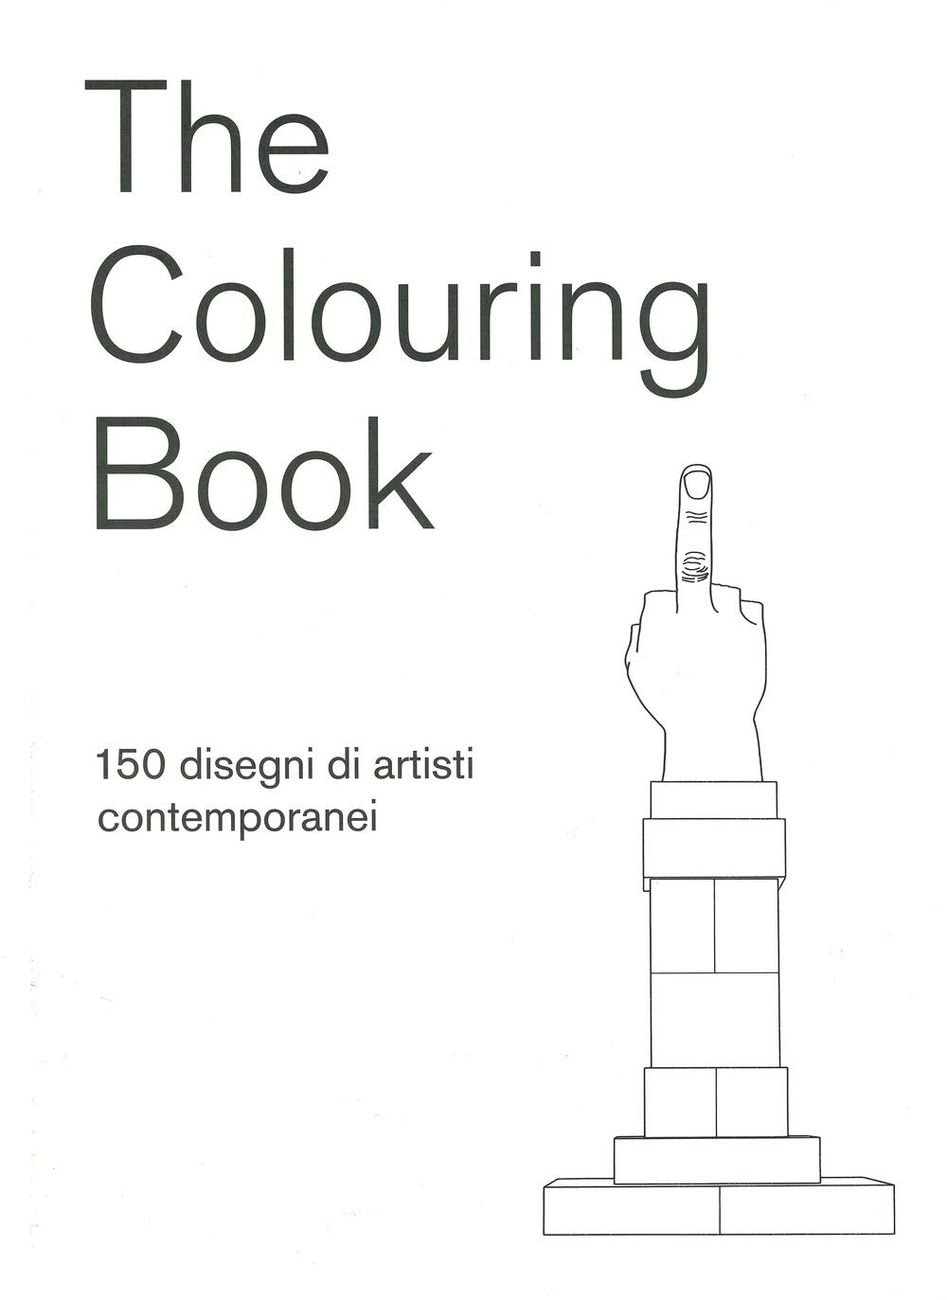 Rossella Farinotti & Gianmaria Biancuzzi (a cura di) – The Colouring Book (24 Ore Cultura, Milano 2020)